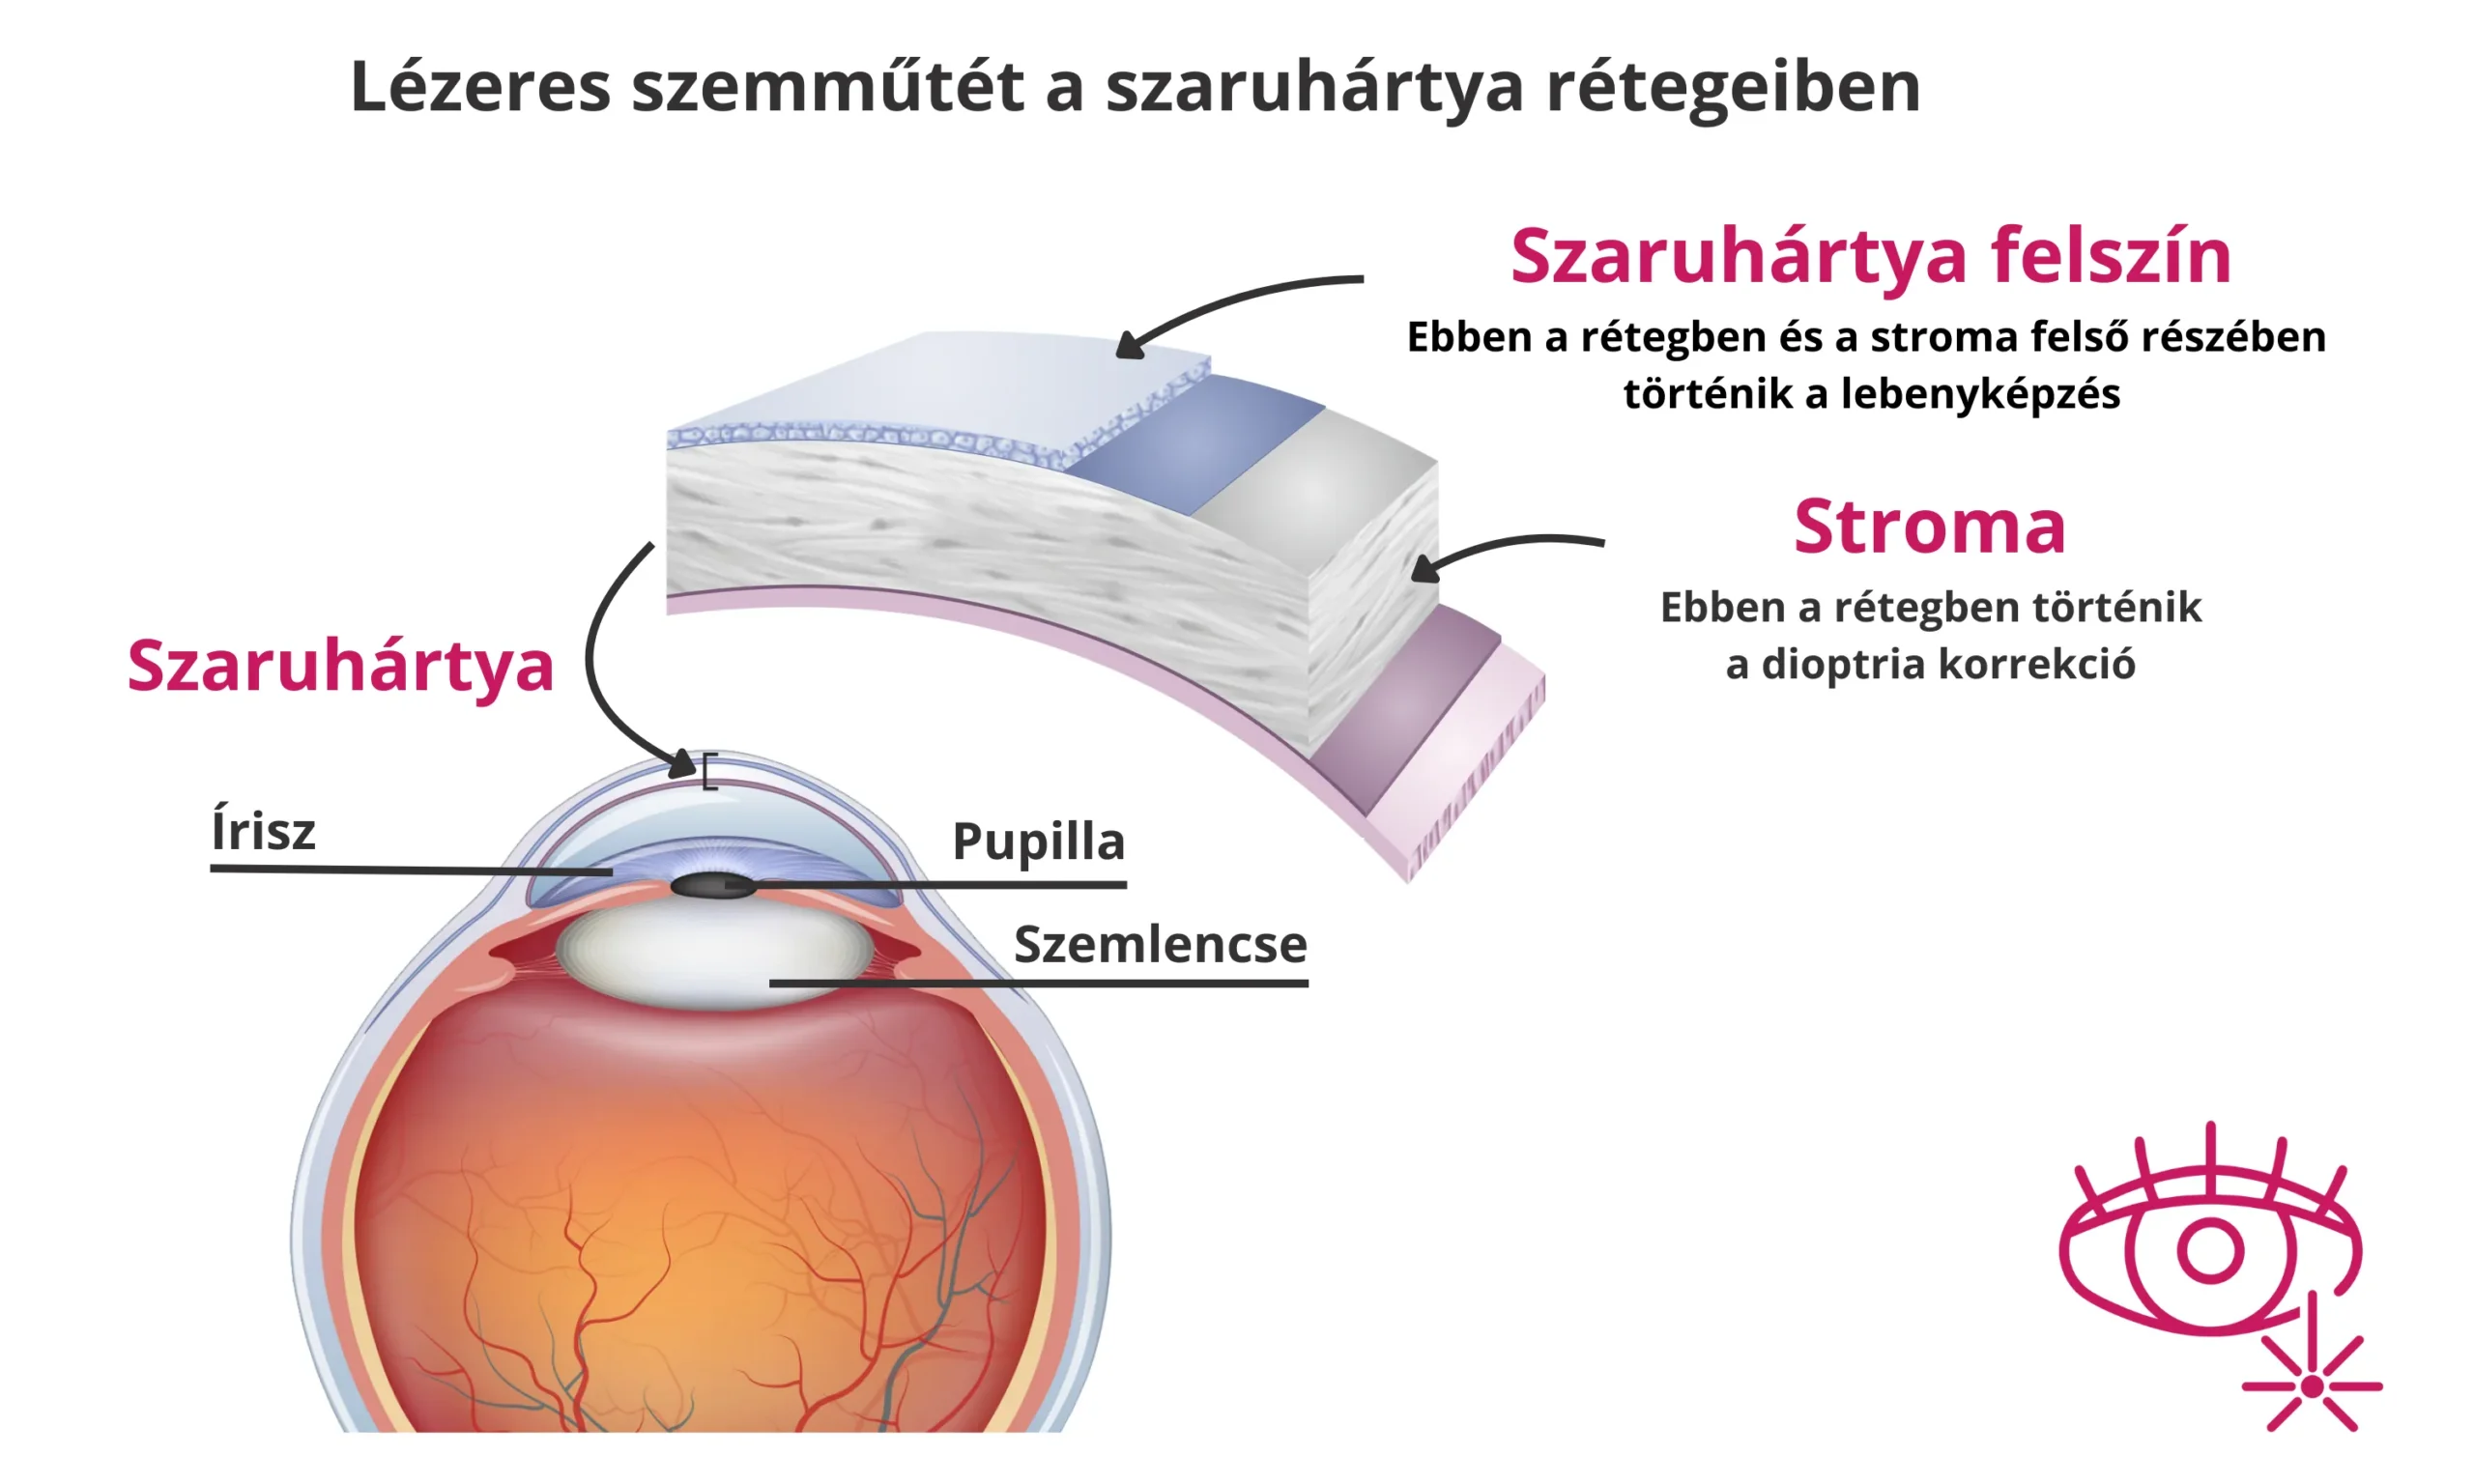 Lézeres szemműtét - lézeres látásjavítás - szaruhártya - stroma - FEMTO - LASIK - OptiLASIK - lebenyes műtét